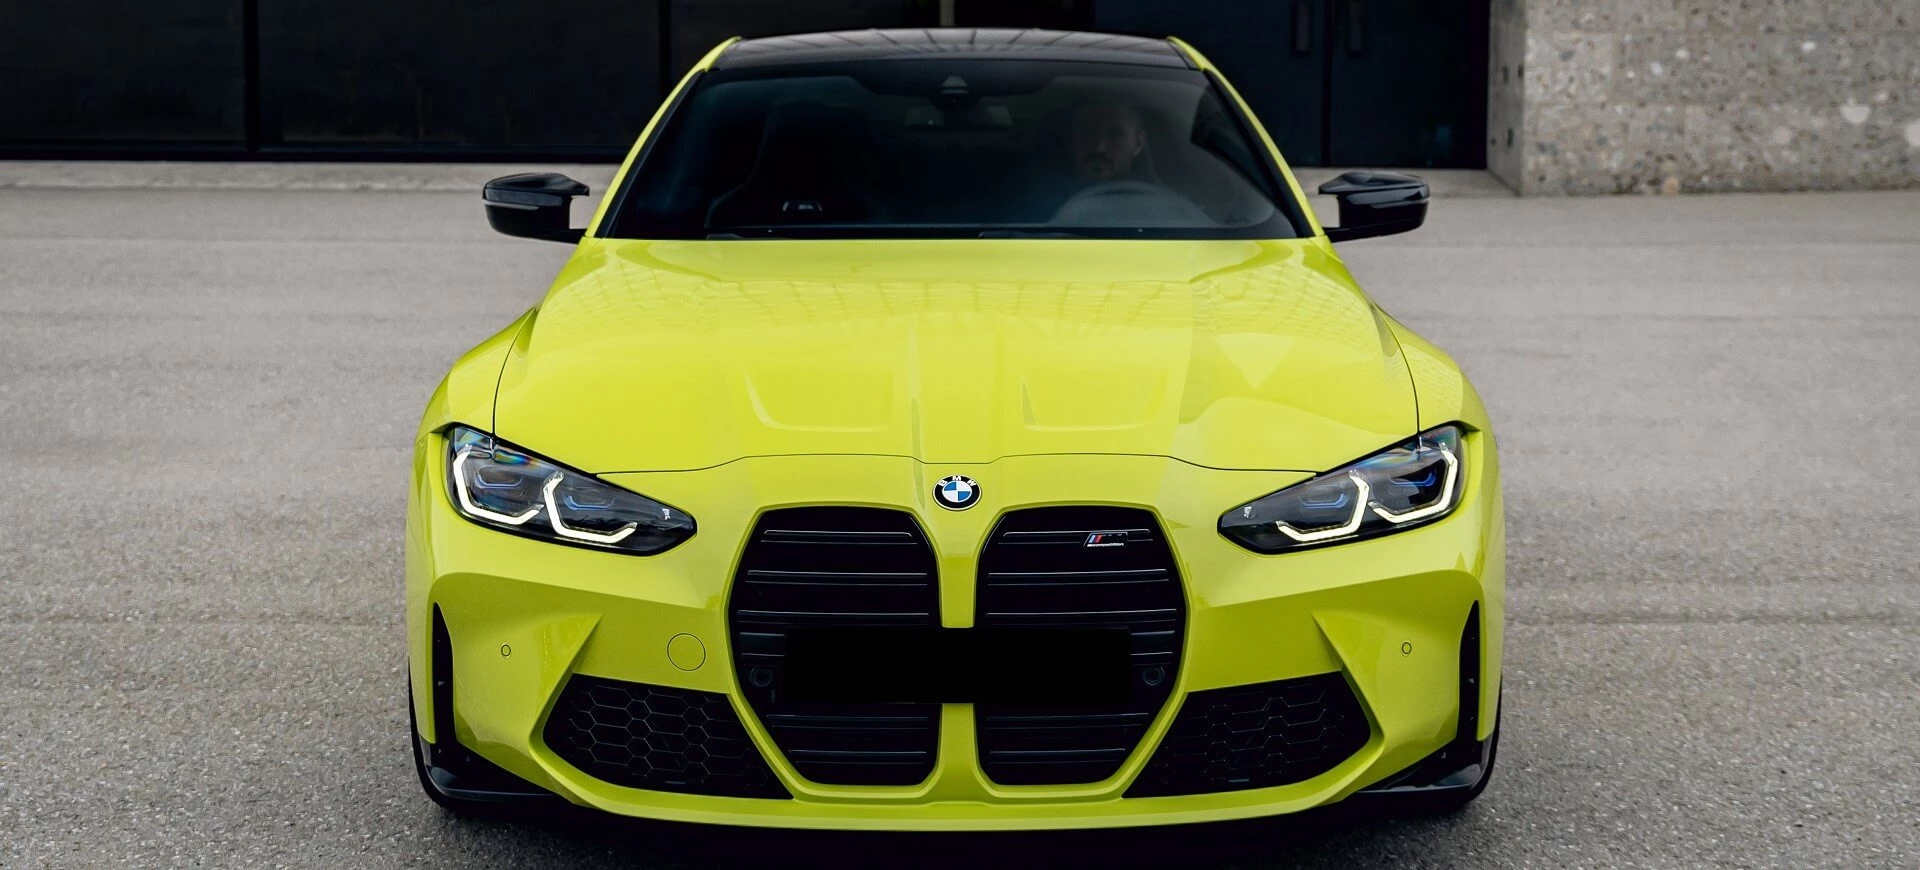 سيارة BMW M4 باللون الأصفر